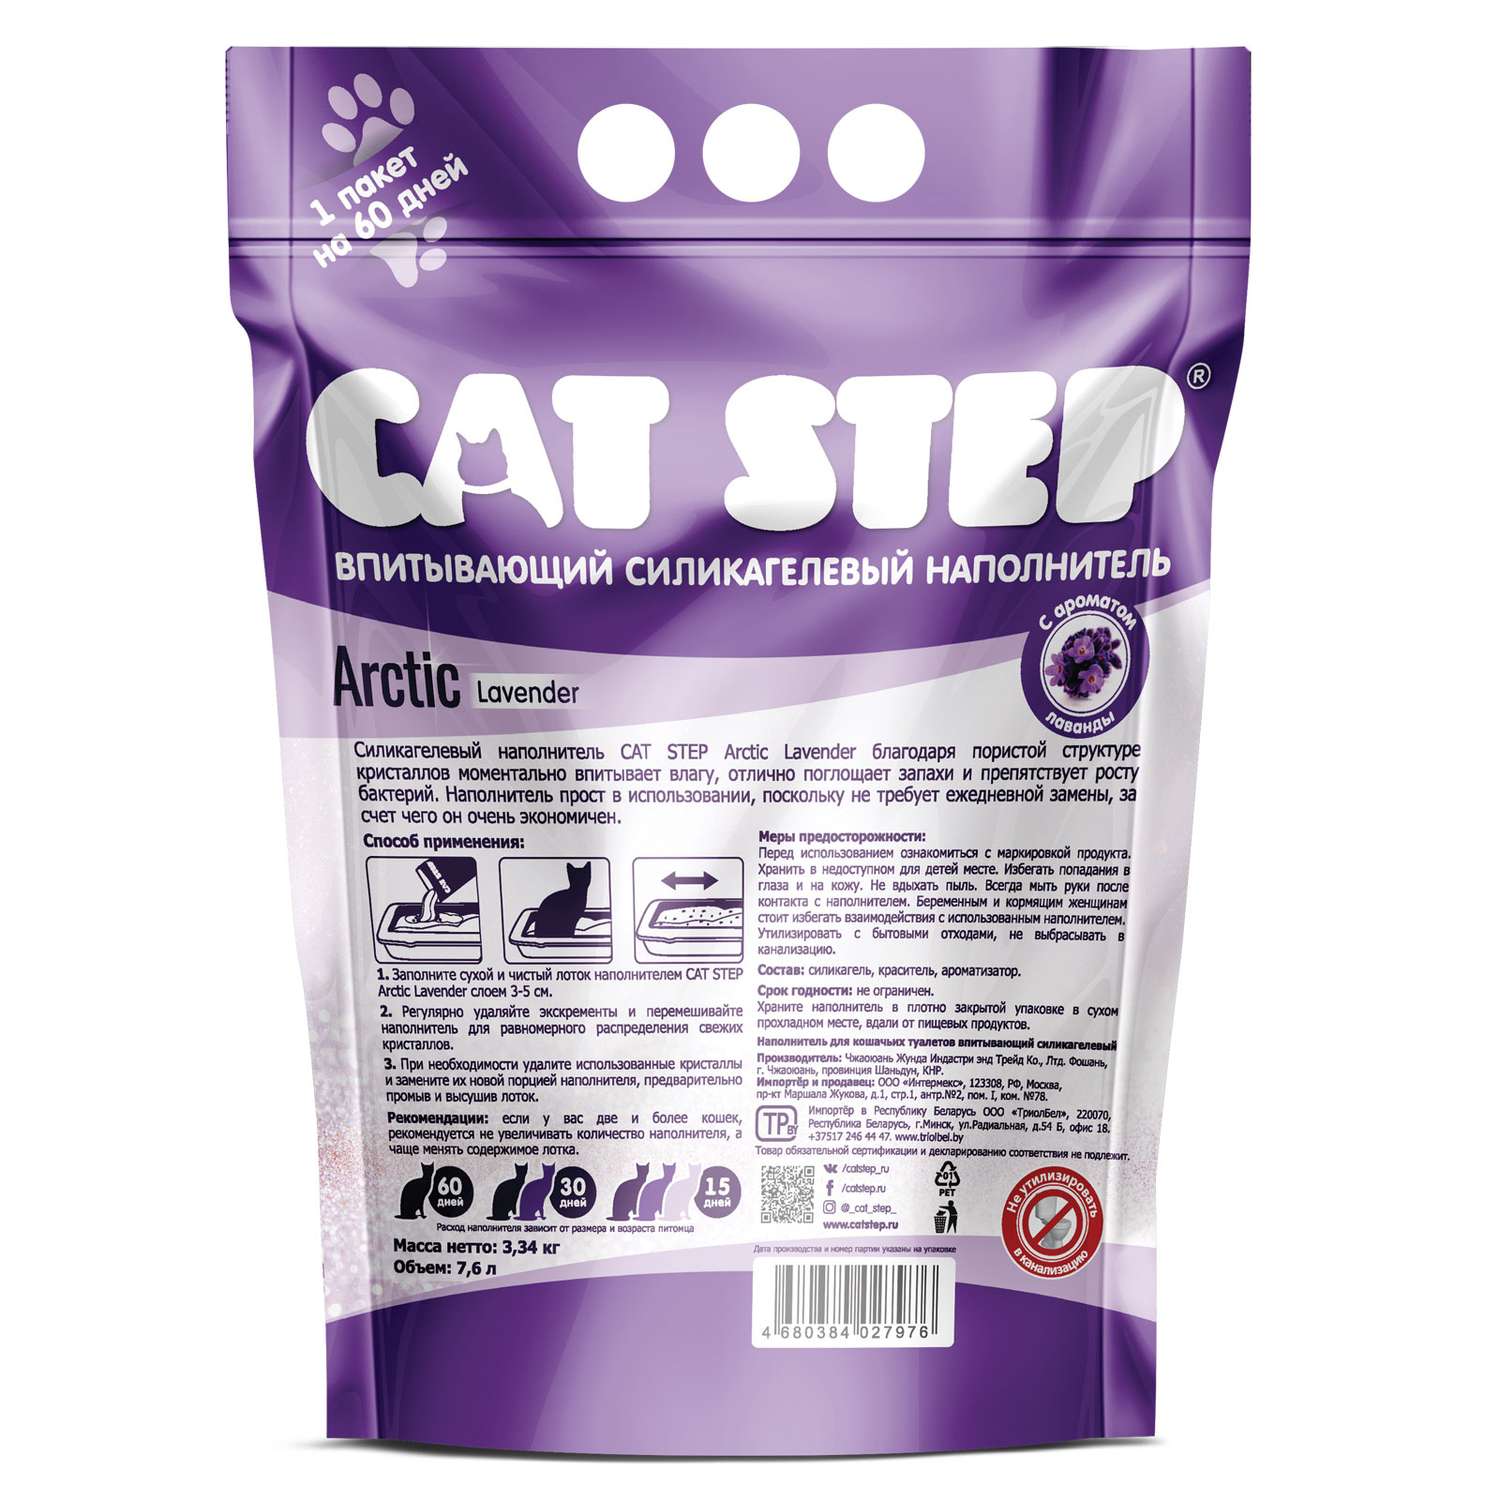 Наполнитель для кошек Cat Step Arctic Lavender впитывающий силикагелевый 7.6л - фото 3